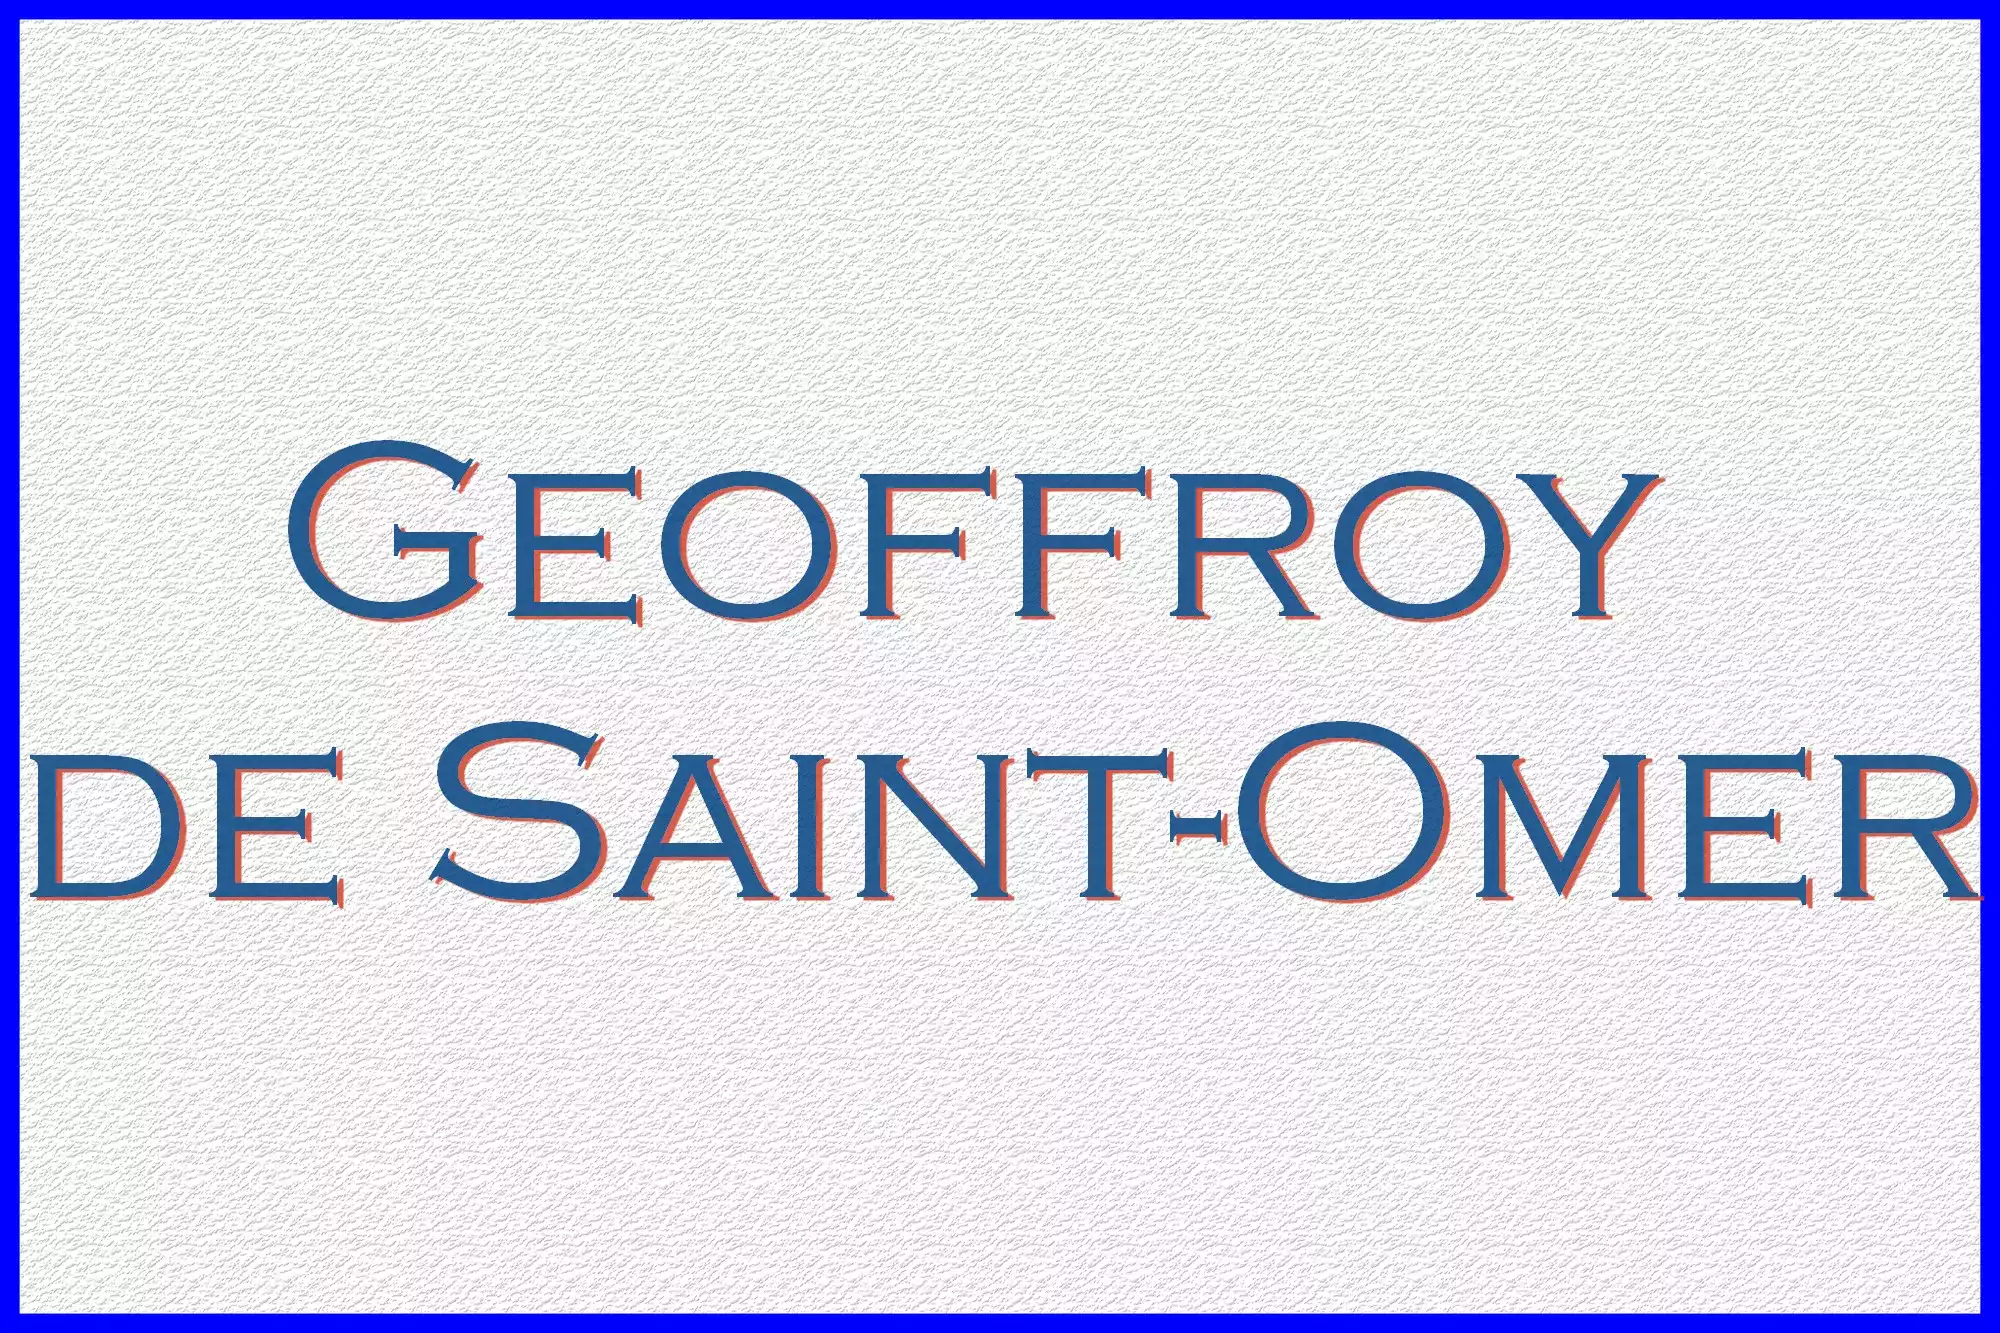 Geoffoy de Saint-Omer